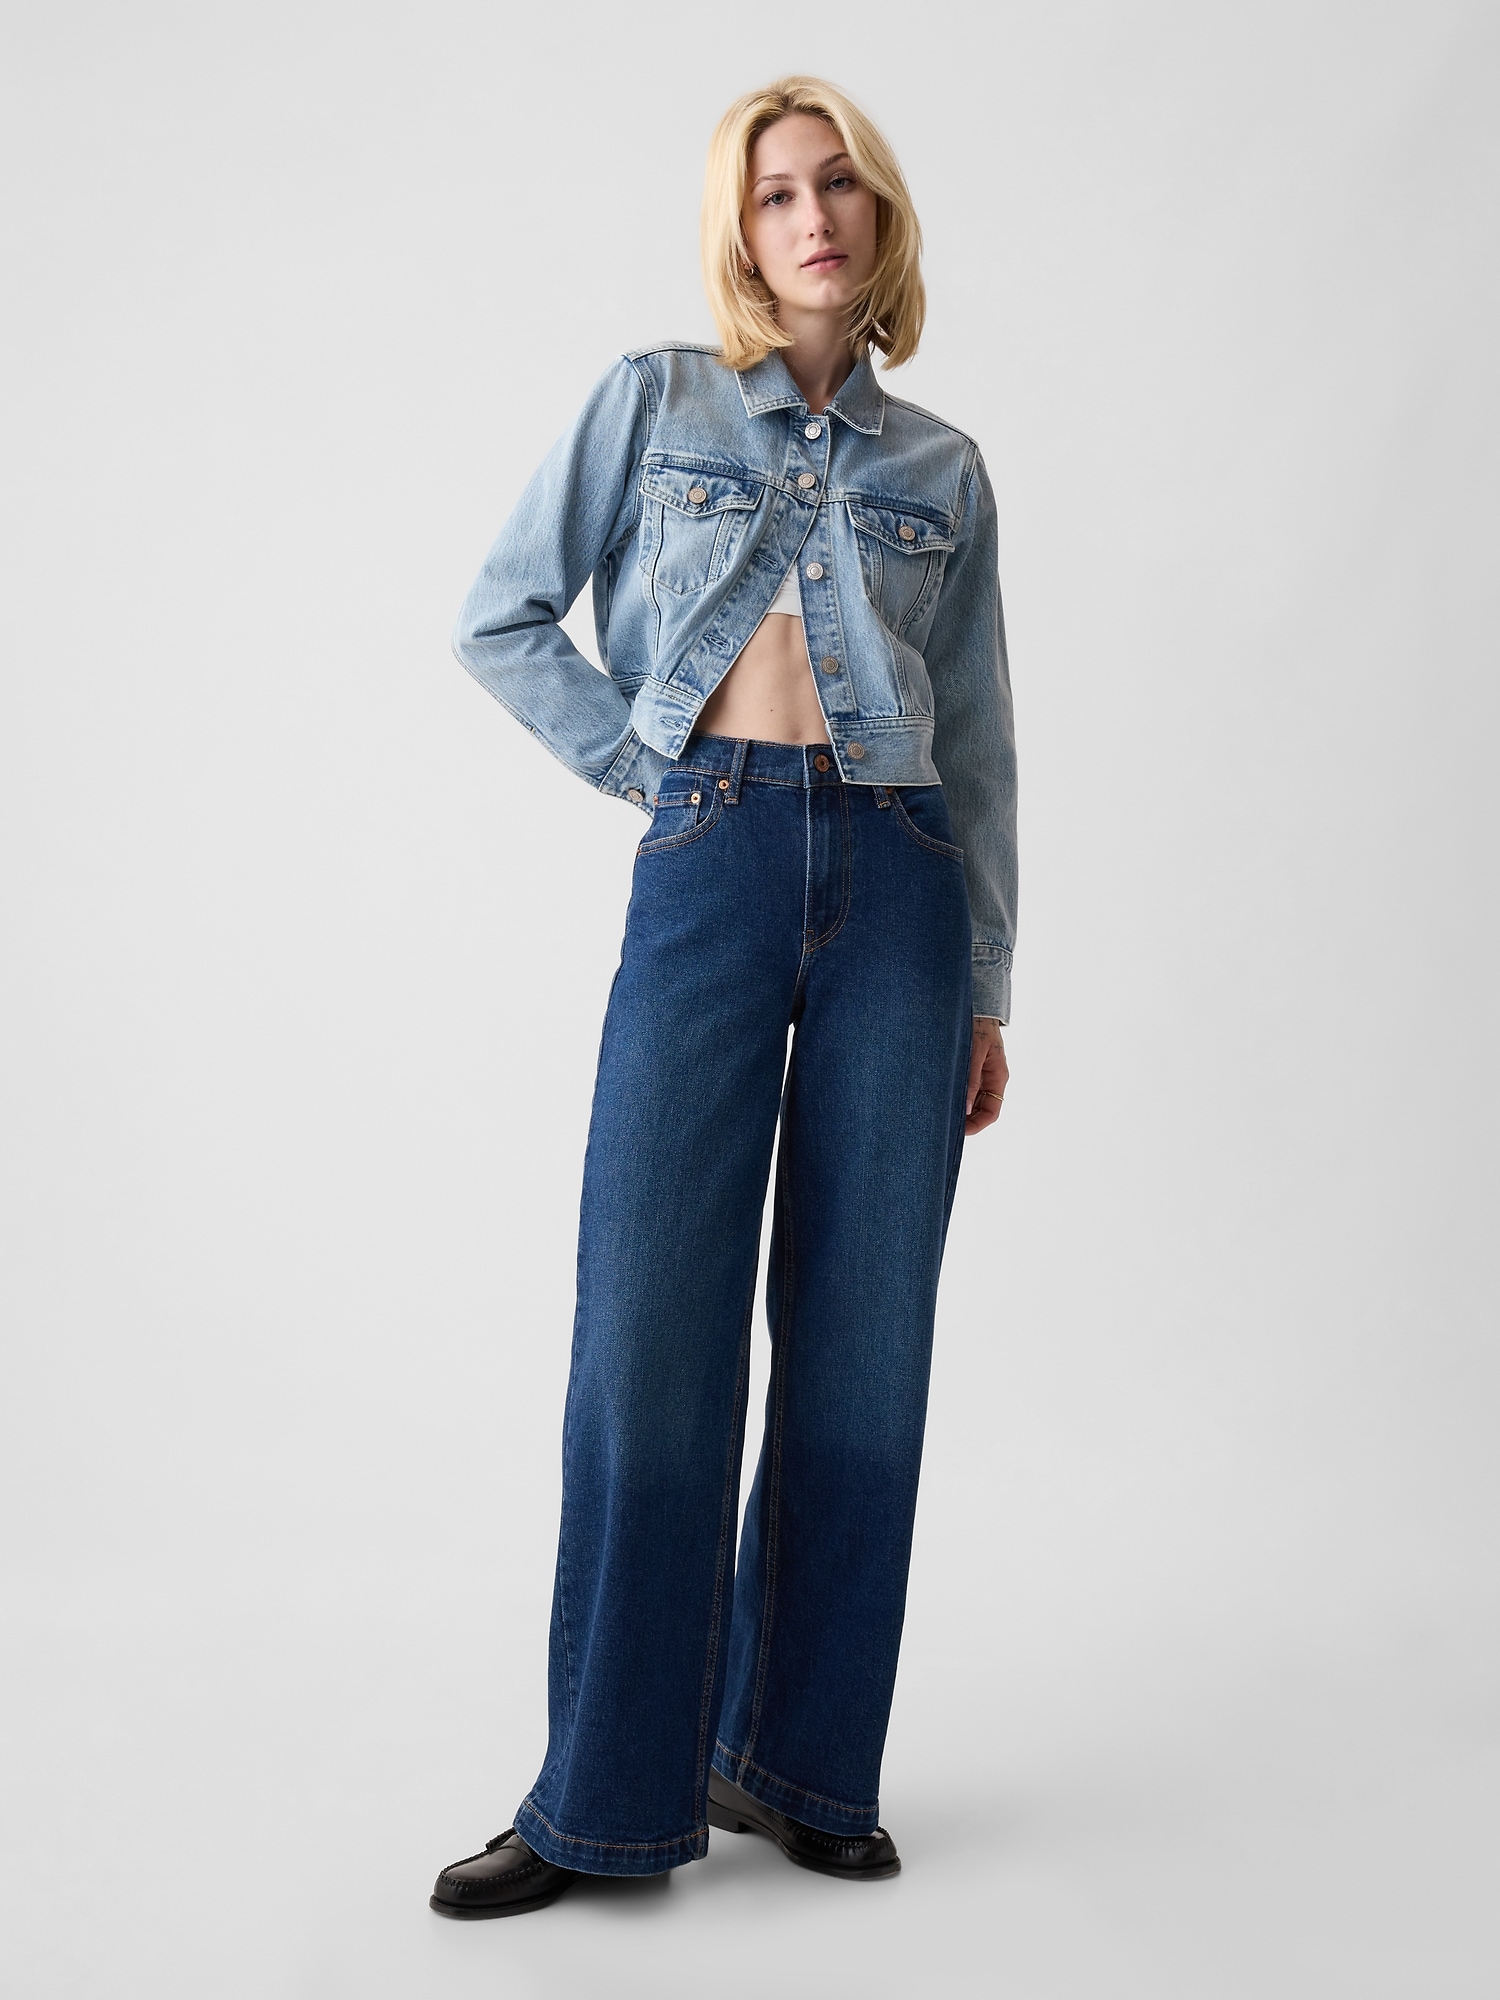 Vintage Plus Size Baggy Boyfriend Jeans For Women High Waist Jeans